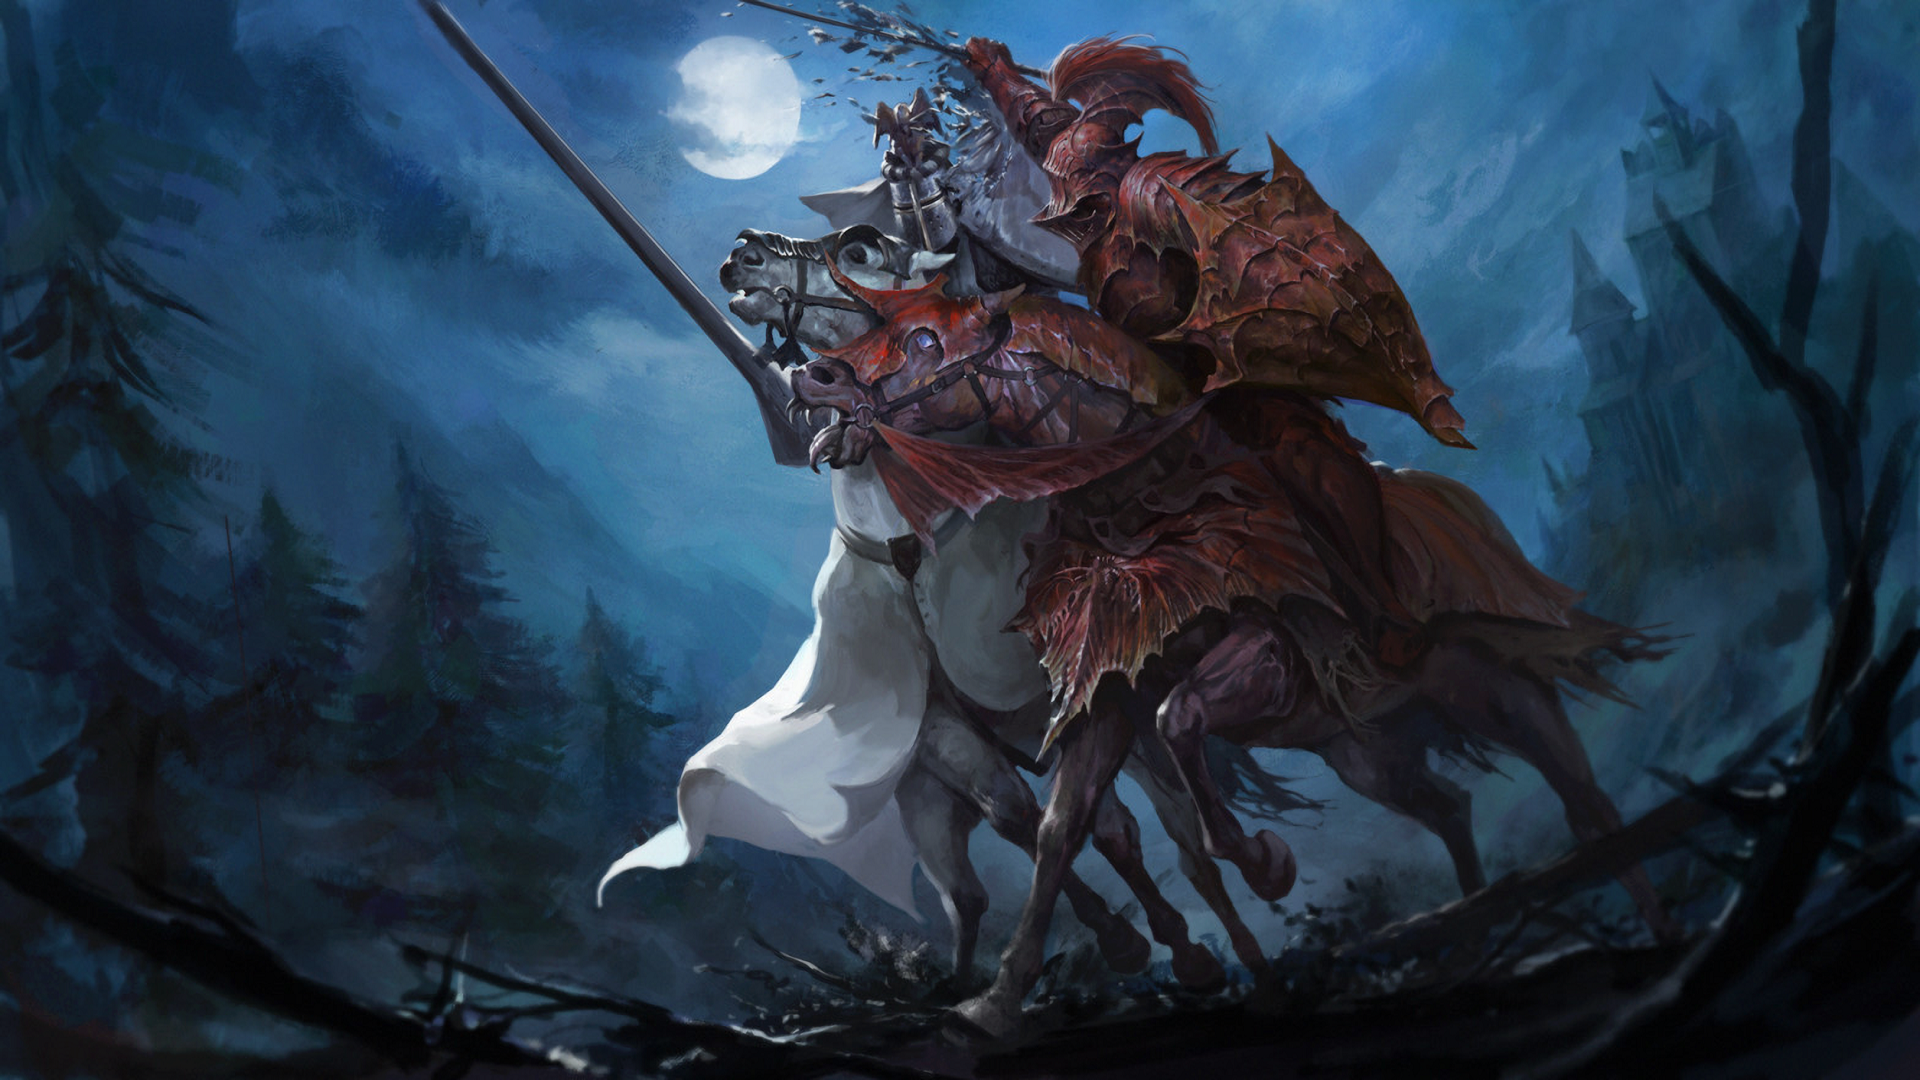 warhammer fantasy wallpaper,cg artwork,personaggio fittizio,demone,mitologia,illustrazione